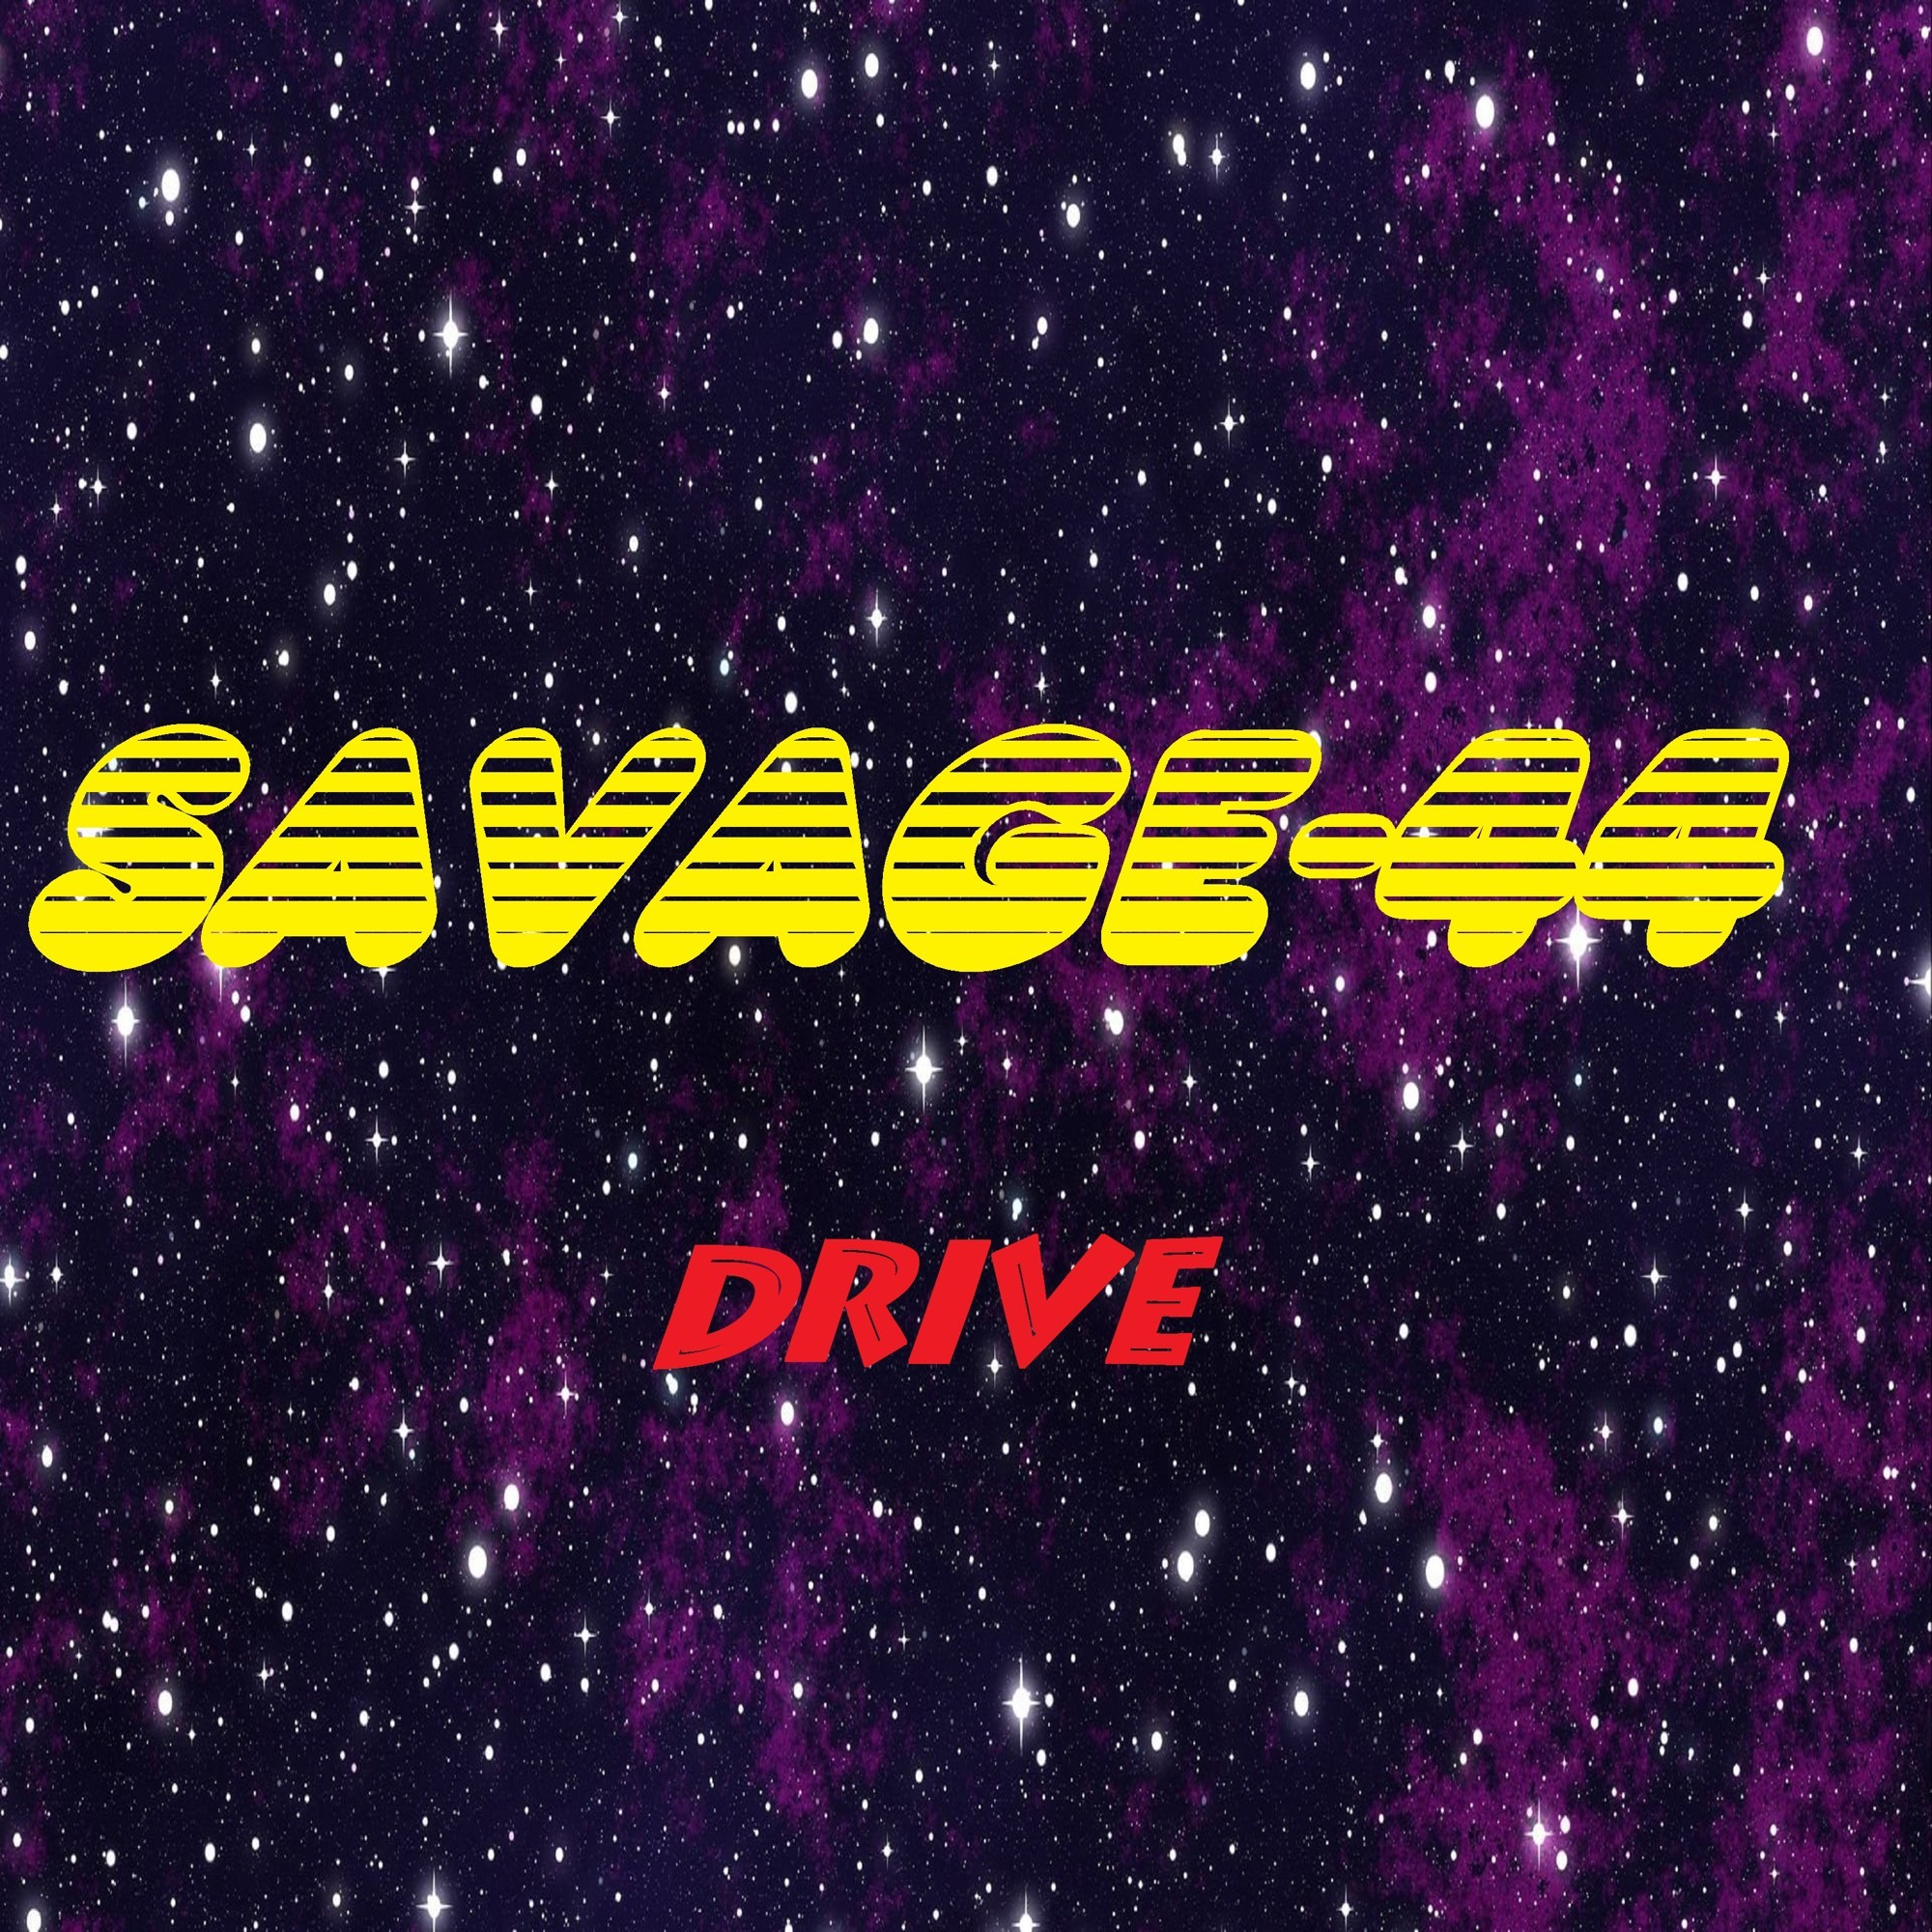 Savage 44 club drive new